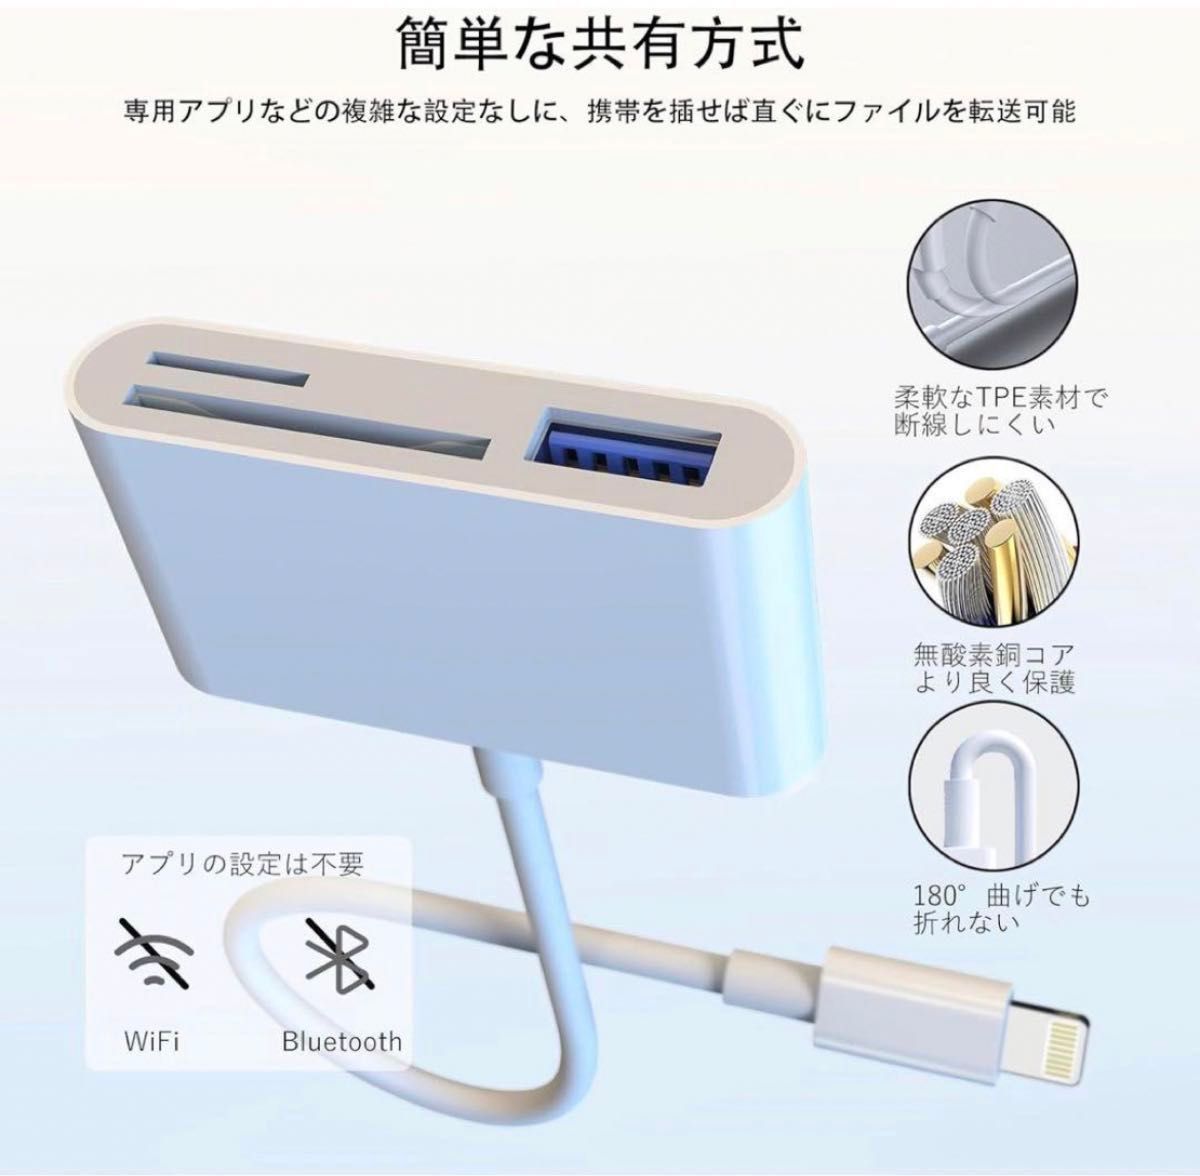 【正規認証品 MFiチップ搭載】iPhone SDカードリーダー 変換アダプタ